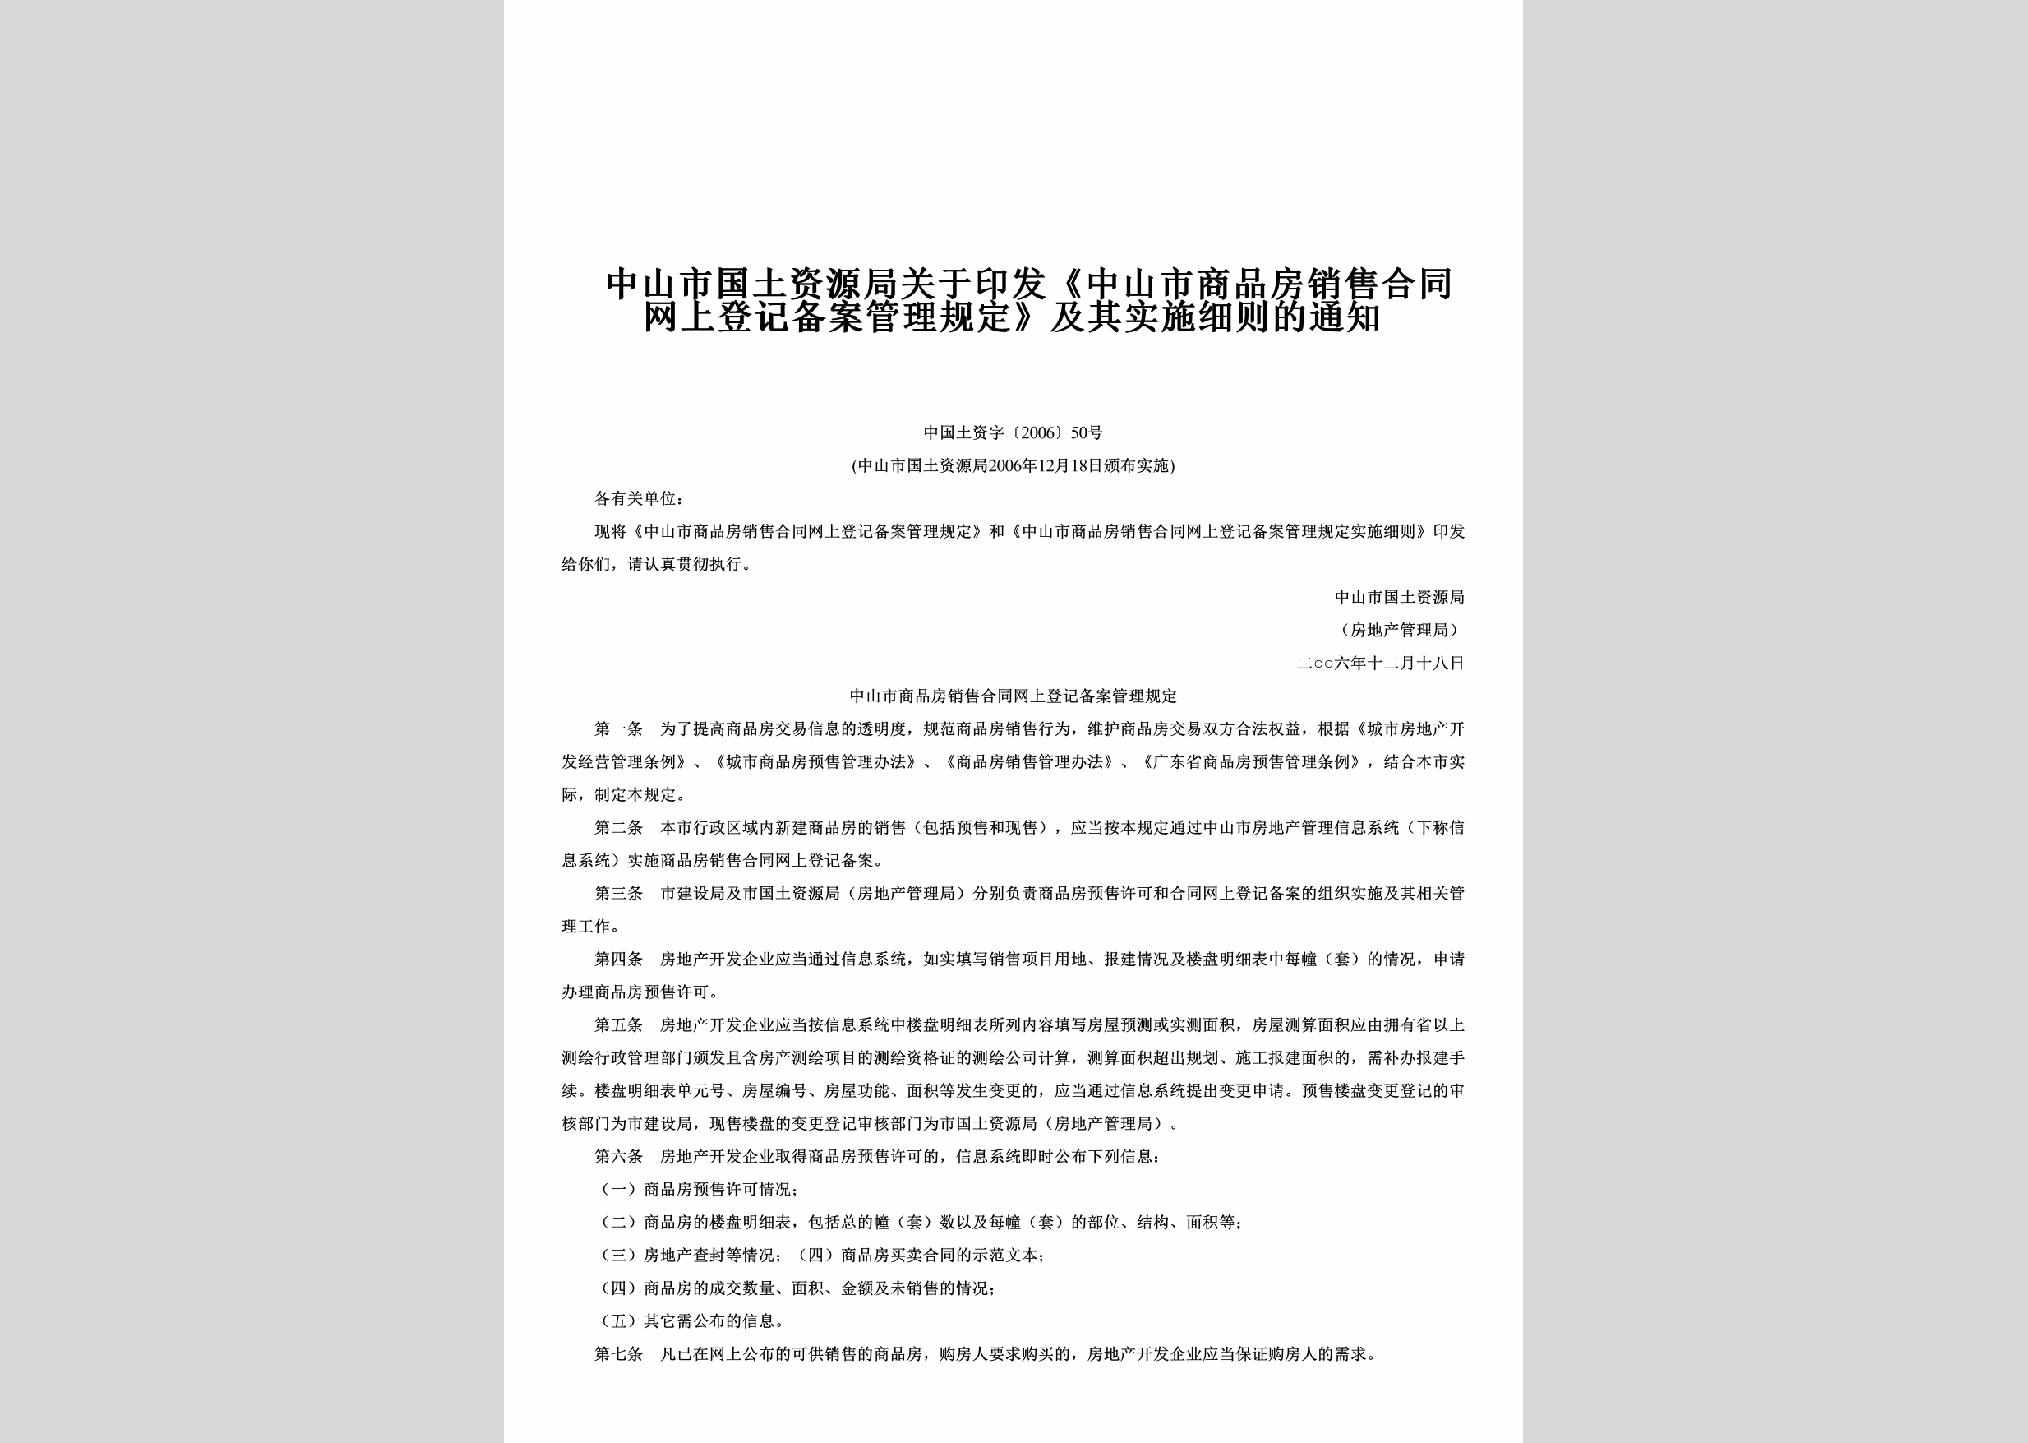 中国土资字[2006]50号：关于印发《中山市商品房销售合同网上登记备案管理规定》及其实施细则的通知